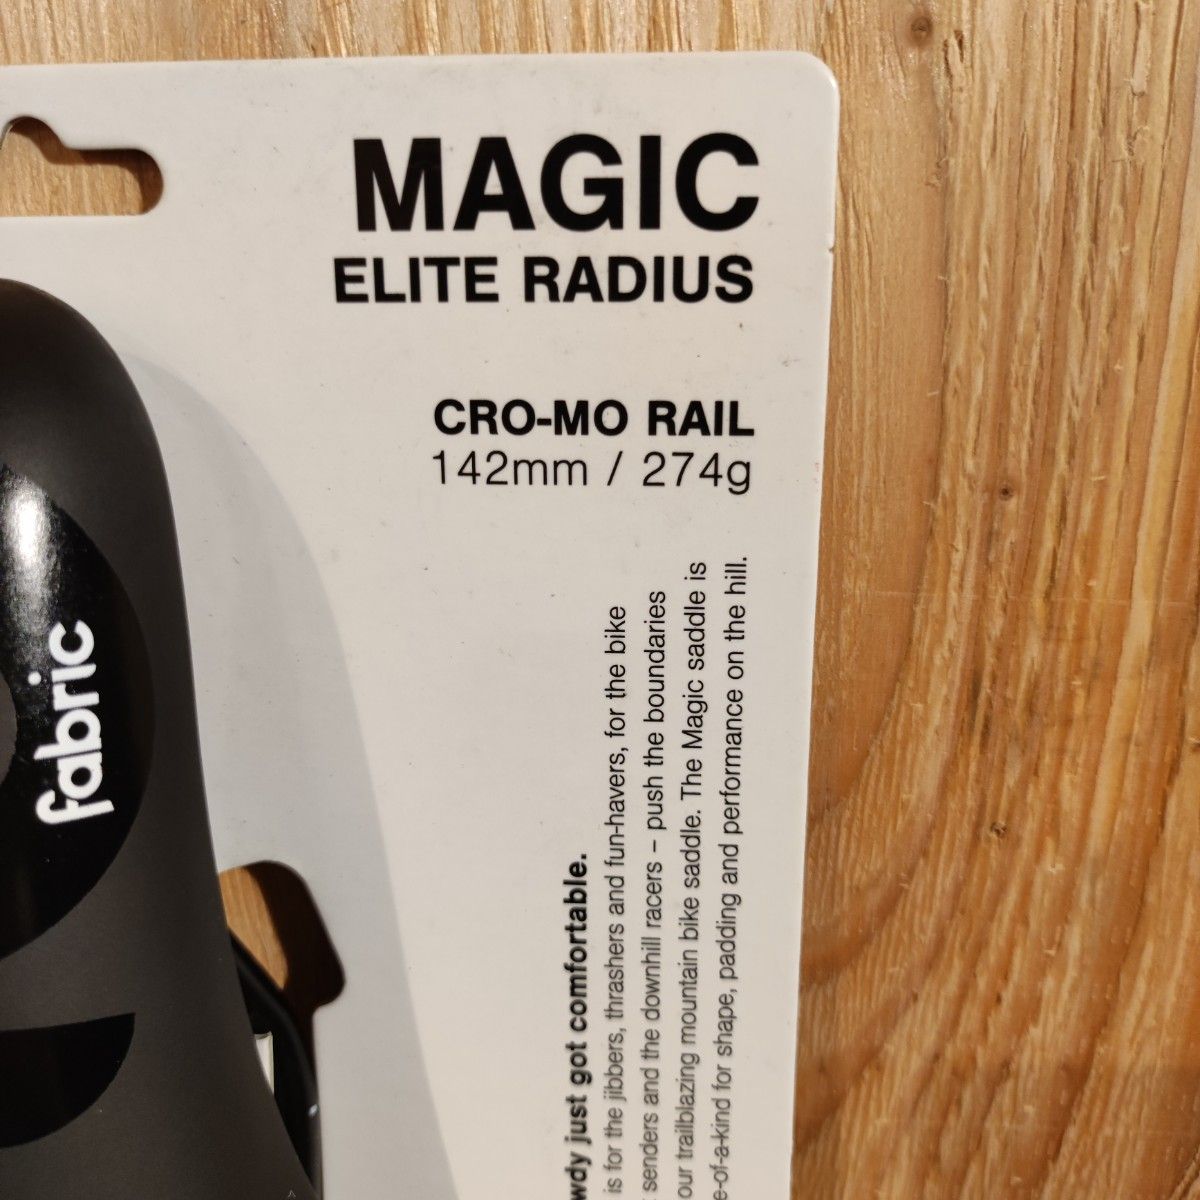 Fabric Magic Elite Radius Saddle MTBはもちろんクロスバイク、ピストにもおすすめのサドル！